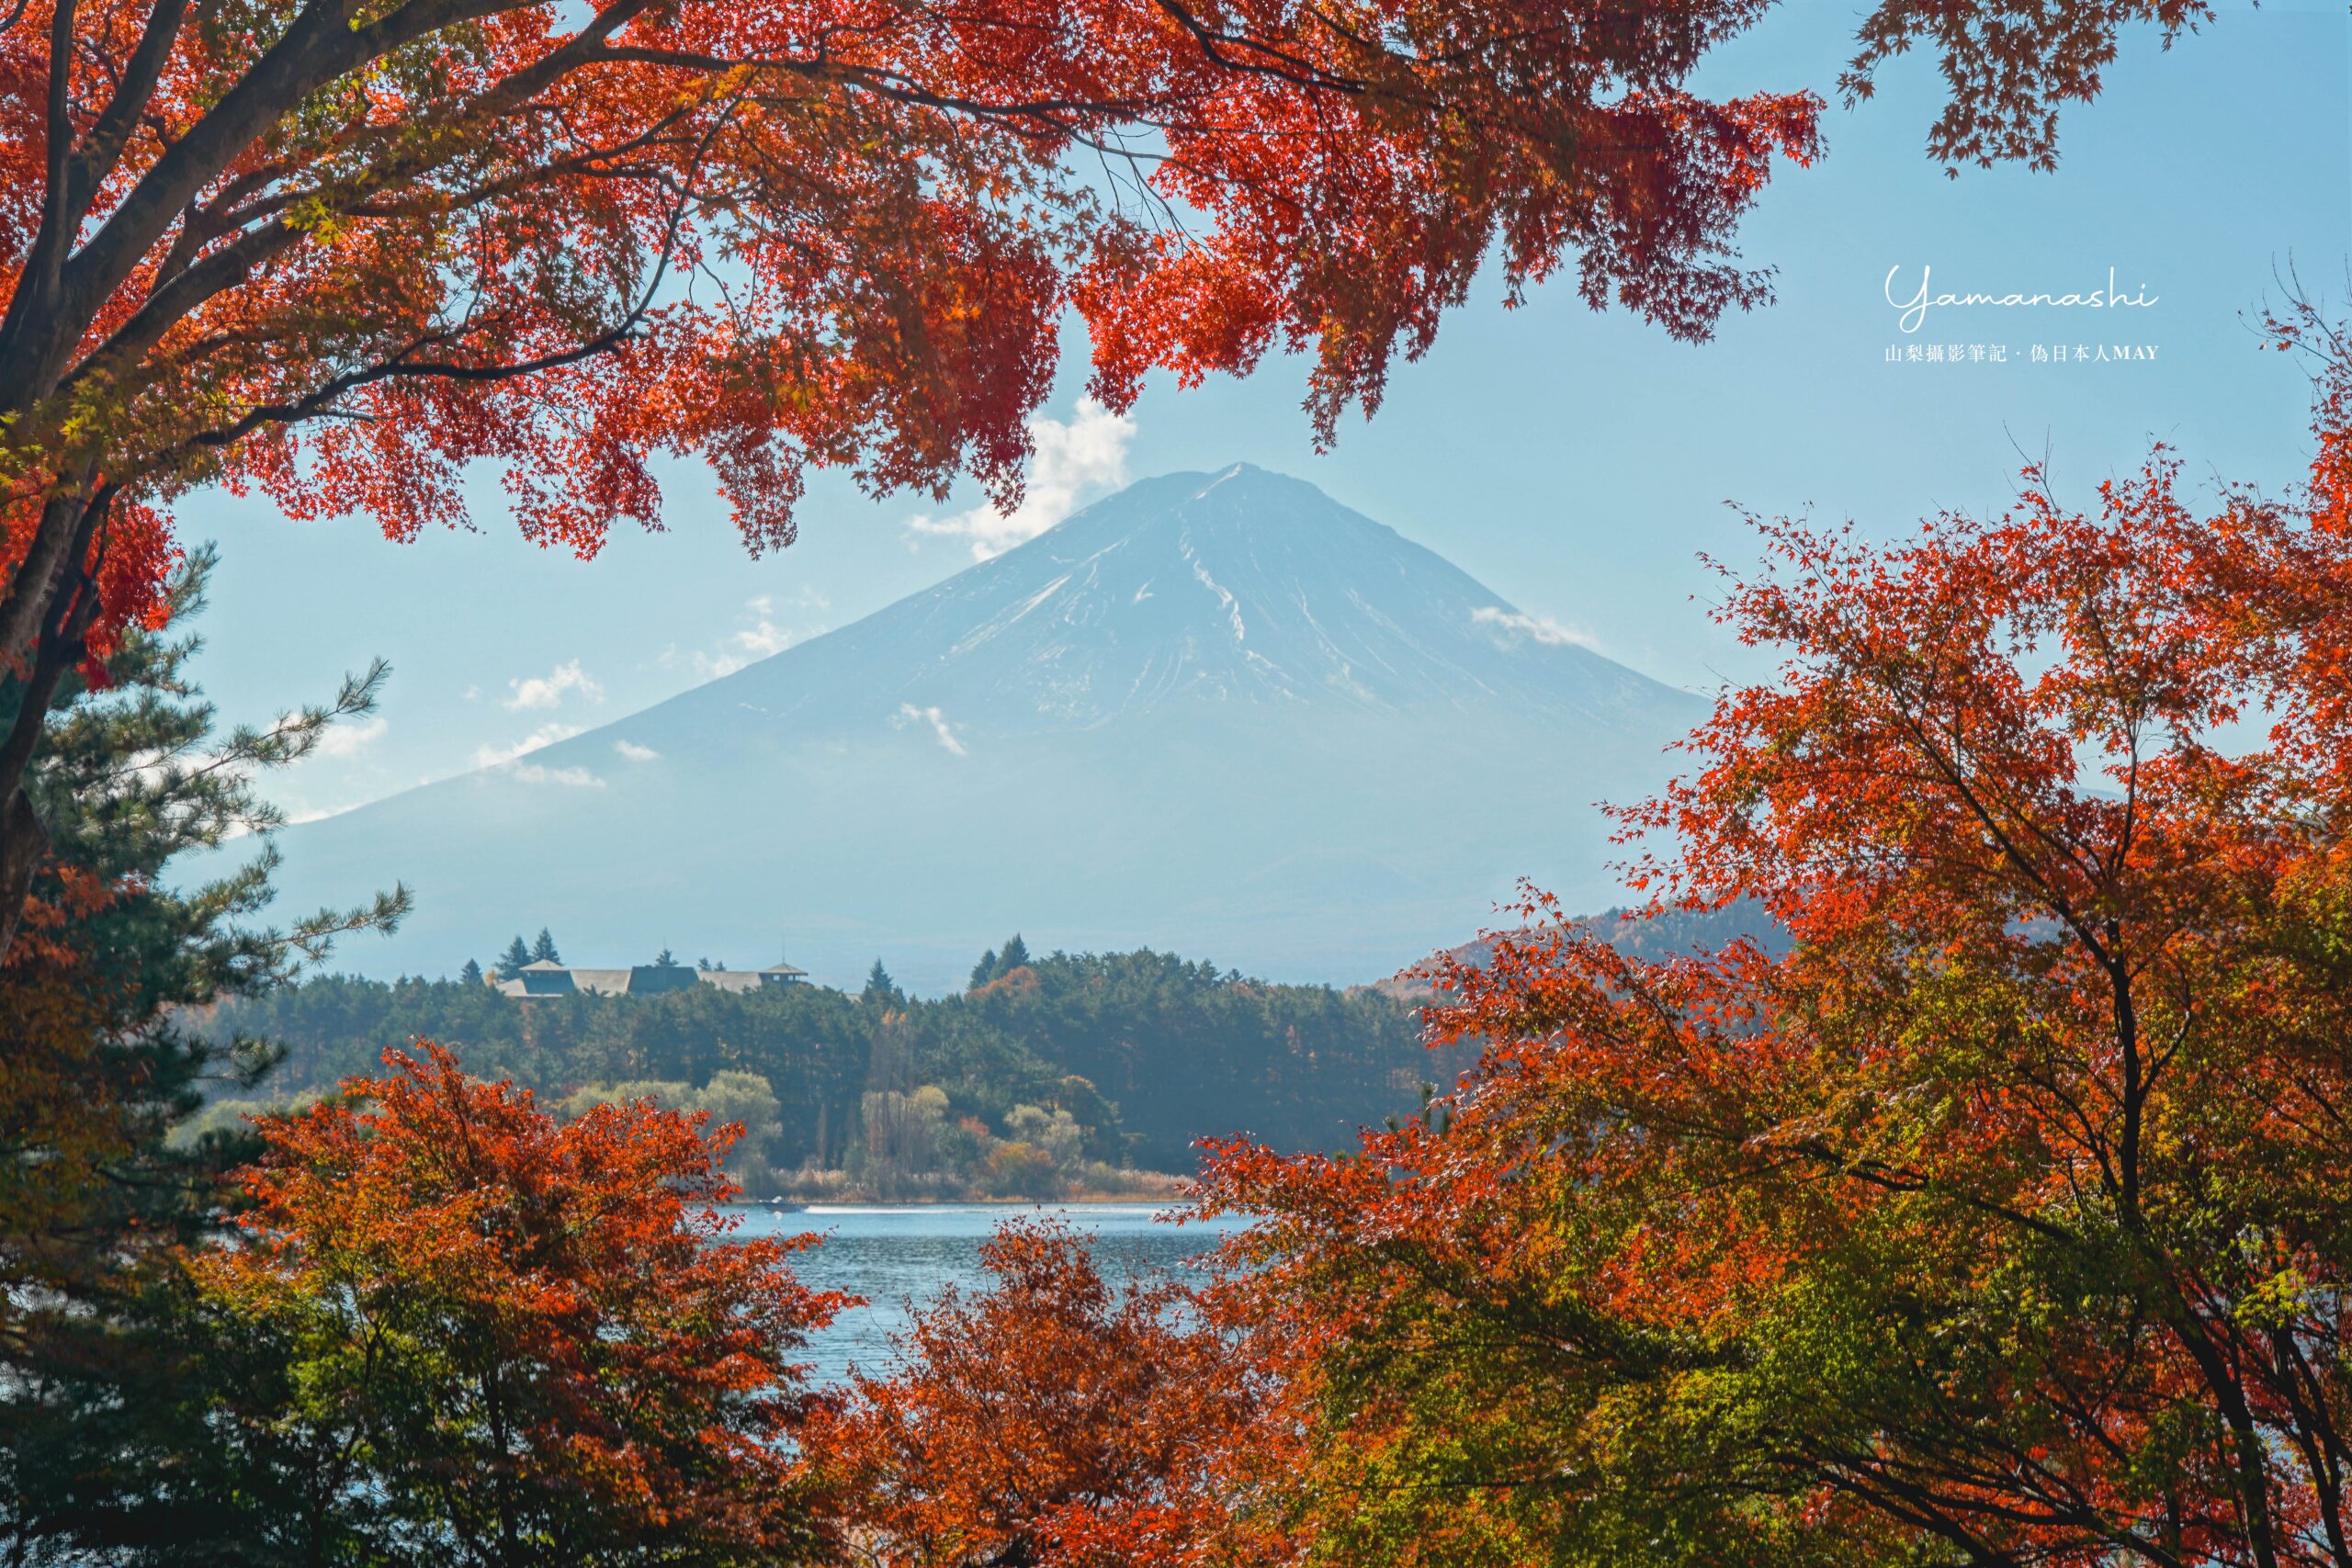 富士山住宿推薦 : Megu Fuji 2021 | 早安午安晚安，在房間裡與富士山問好，看著最美風景的旅居生活讓人喜歡極了 | 附加服務 : 和服租借、專業人像攝影 @偽日本人May．食遊玩樂